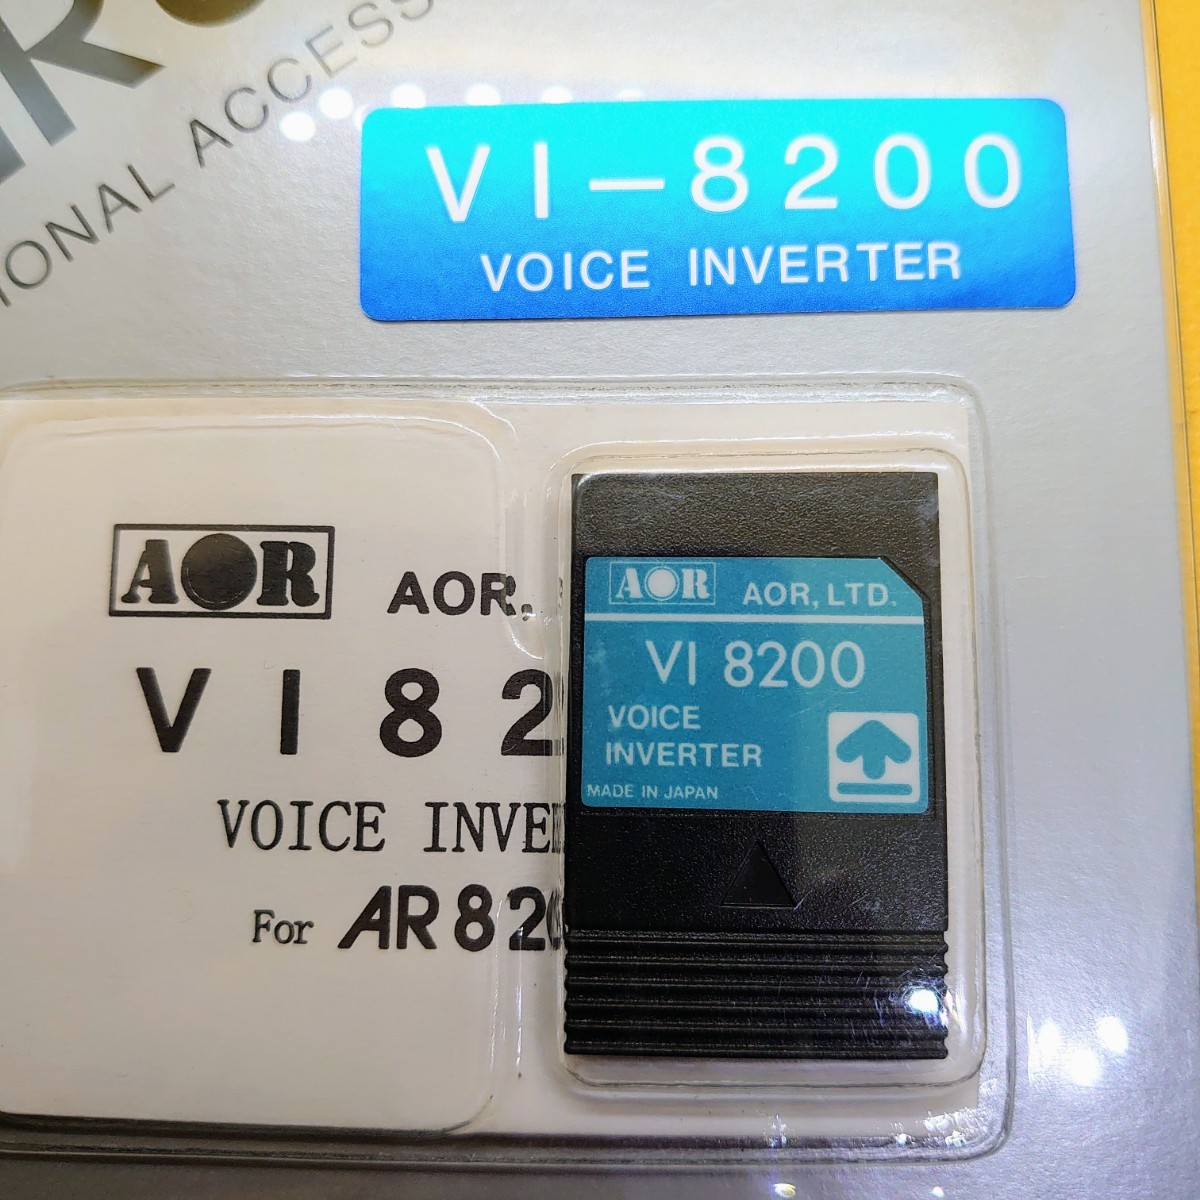 452[ нераспечатанный не использовался ]AOR VI8200 VOICE INVERTER AR8200/AR8600 серия voice инвертер звук . вращение .. единица оригинальная опция 